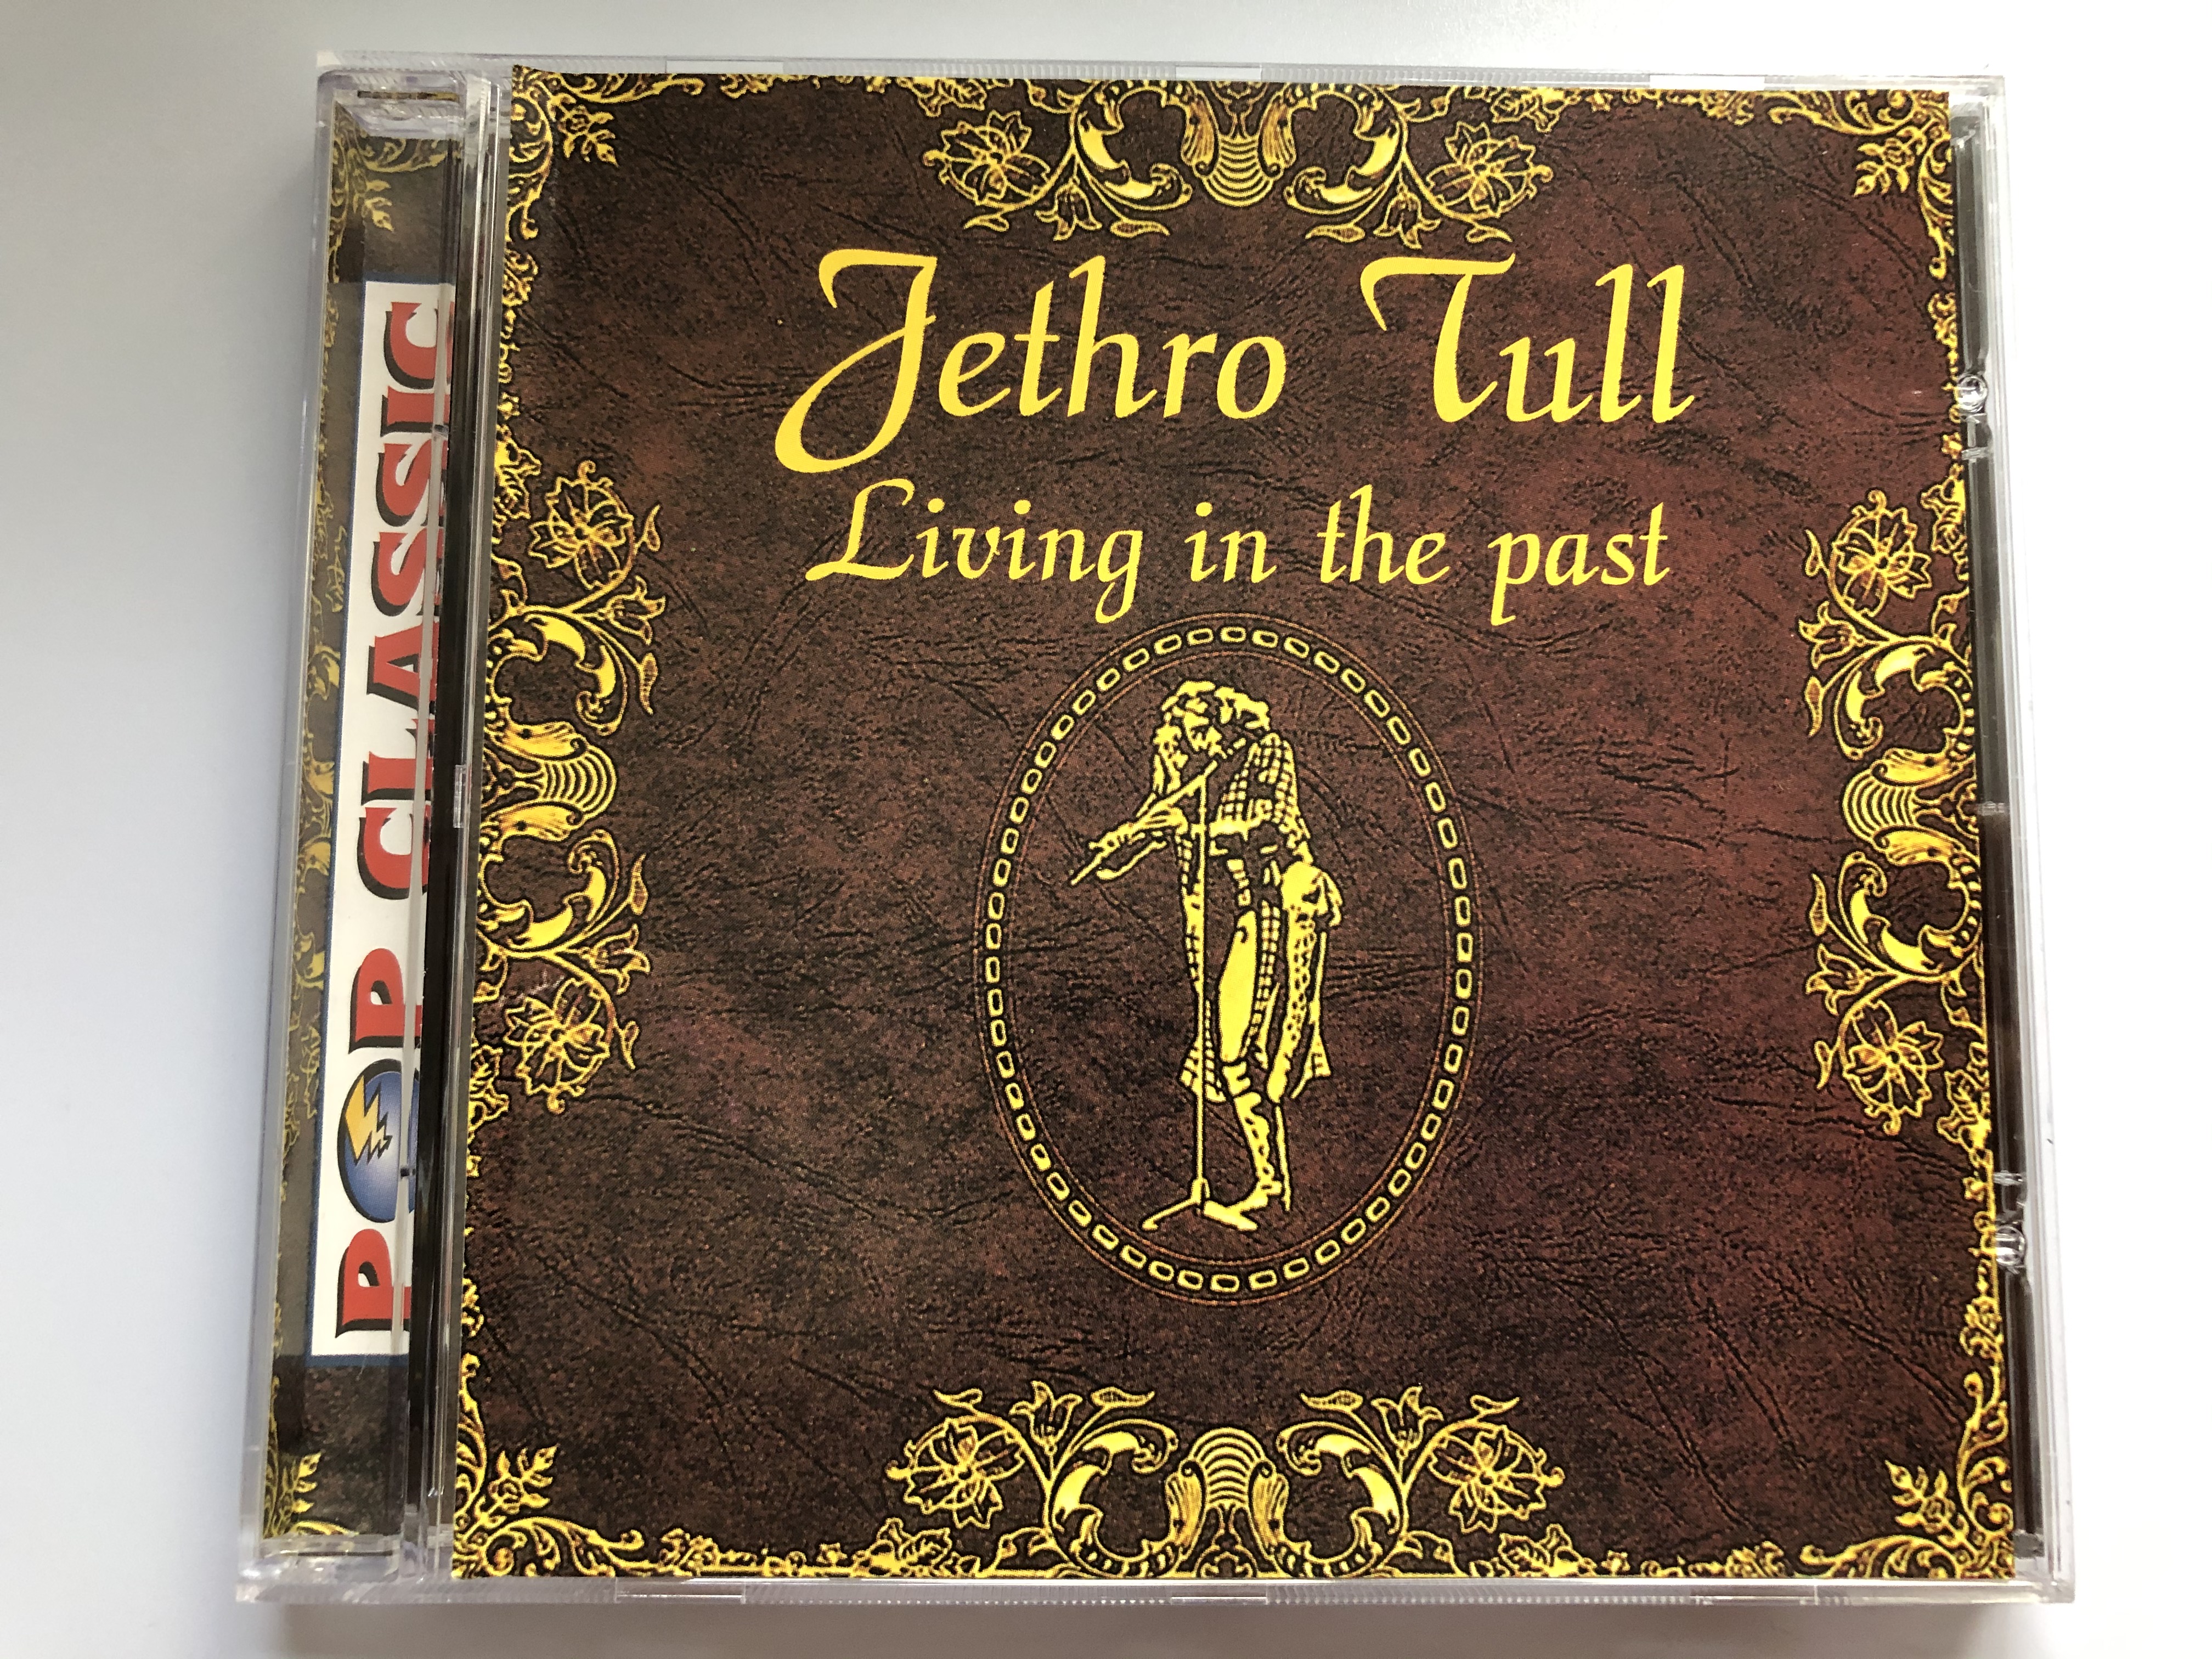 jethro-tull-living-in-the-past-pop-classic-euroton-audio-cd-eucd-0089-1-.jpg